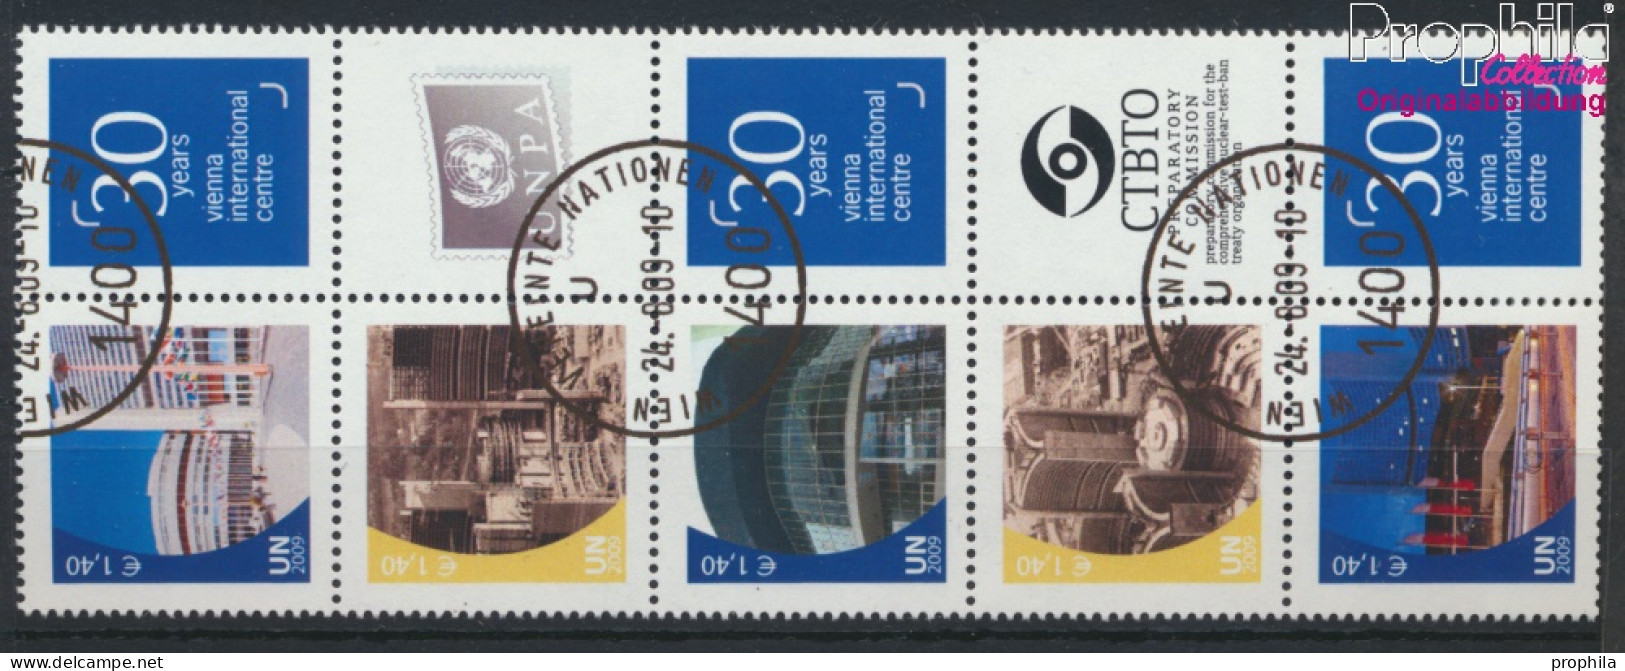 UNO - Wien 607A Zf-611A Zf Zehnerblock (kompl.Ausg.) Gestempelt 2009 Grußmarken (10054377 - Used Stamps